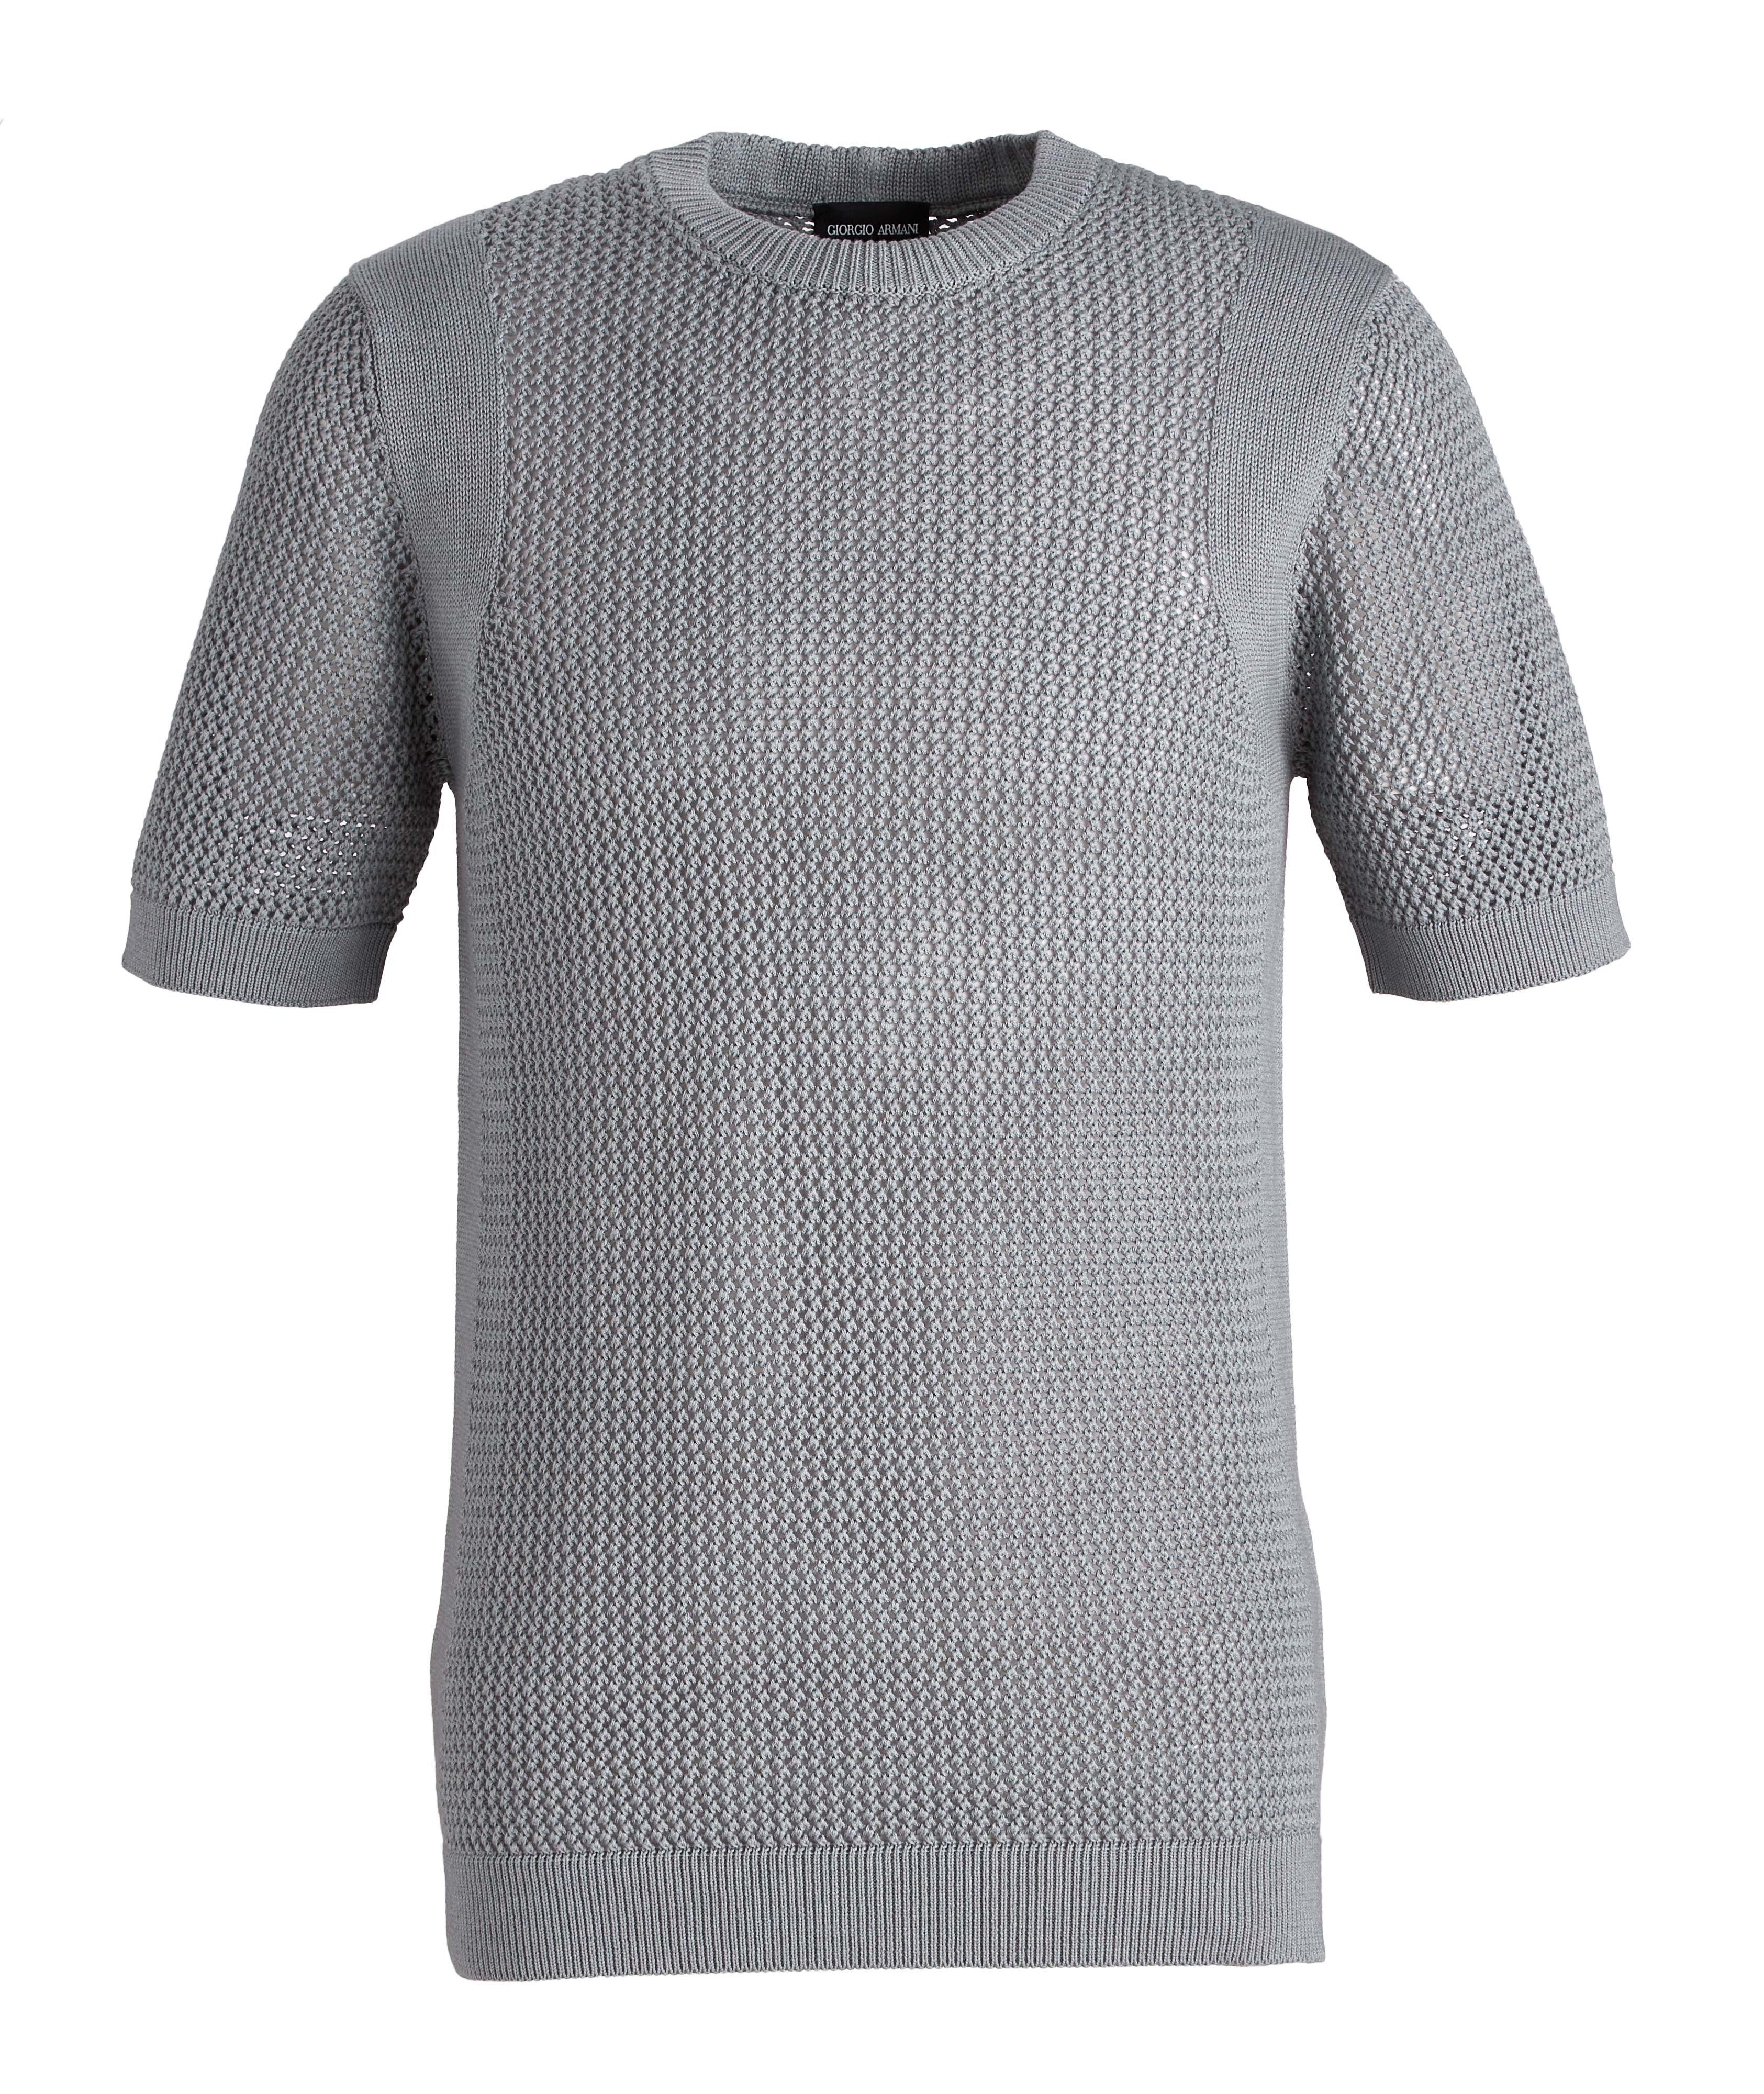 T-shirt en tricot de laine et coton image 0